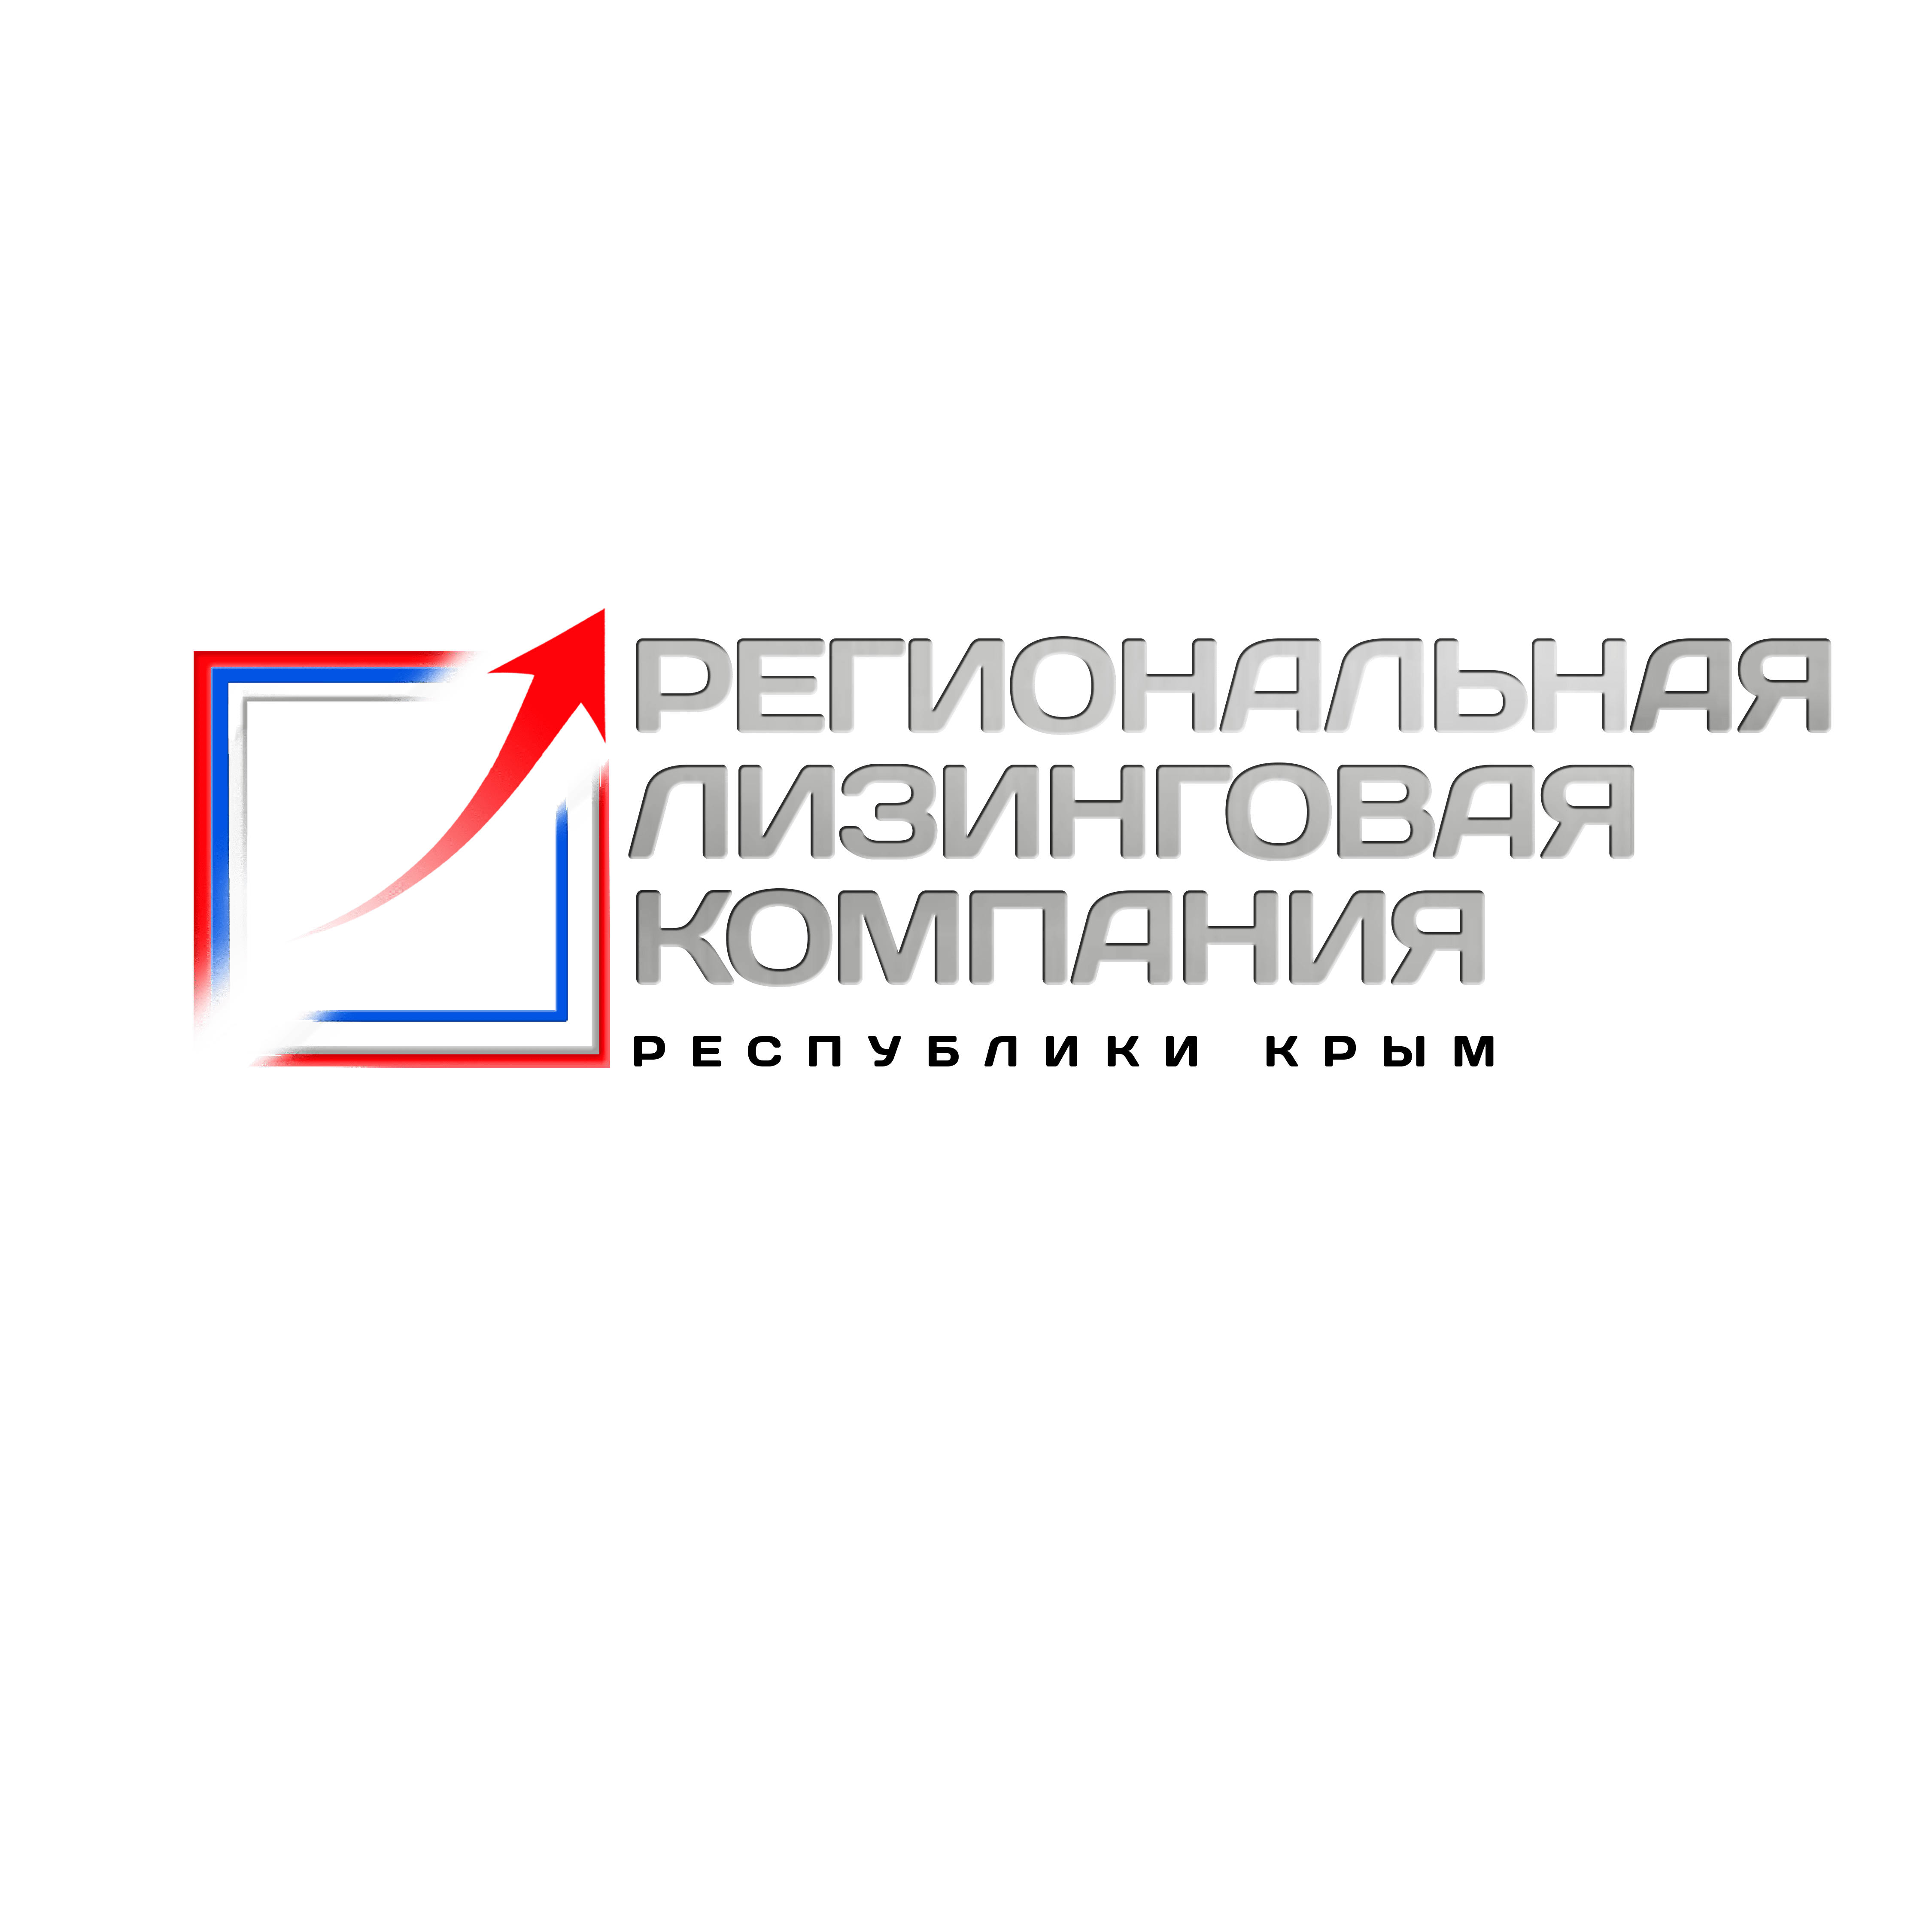 Региональная лизинговая компания Республики Крым